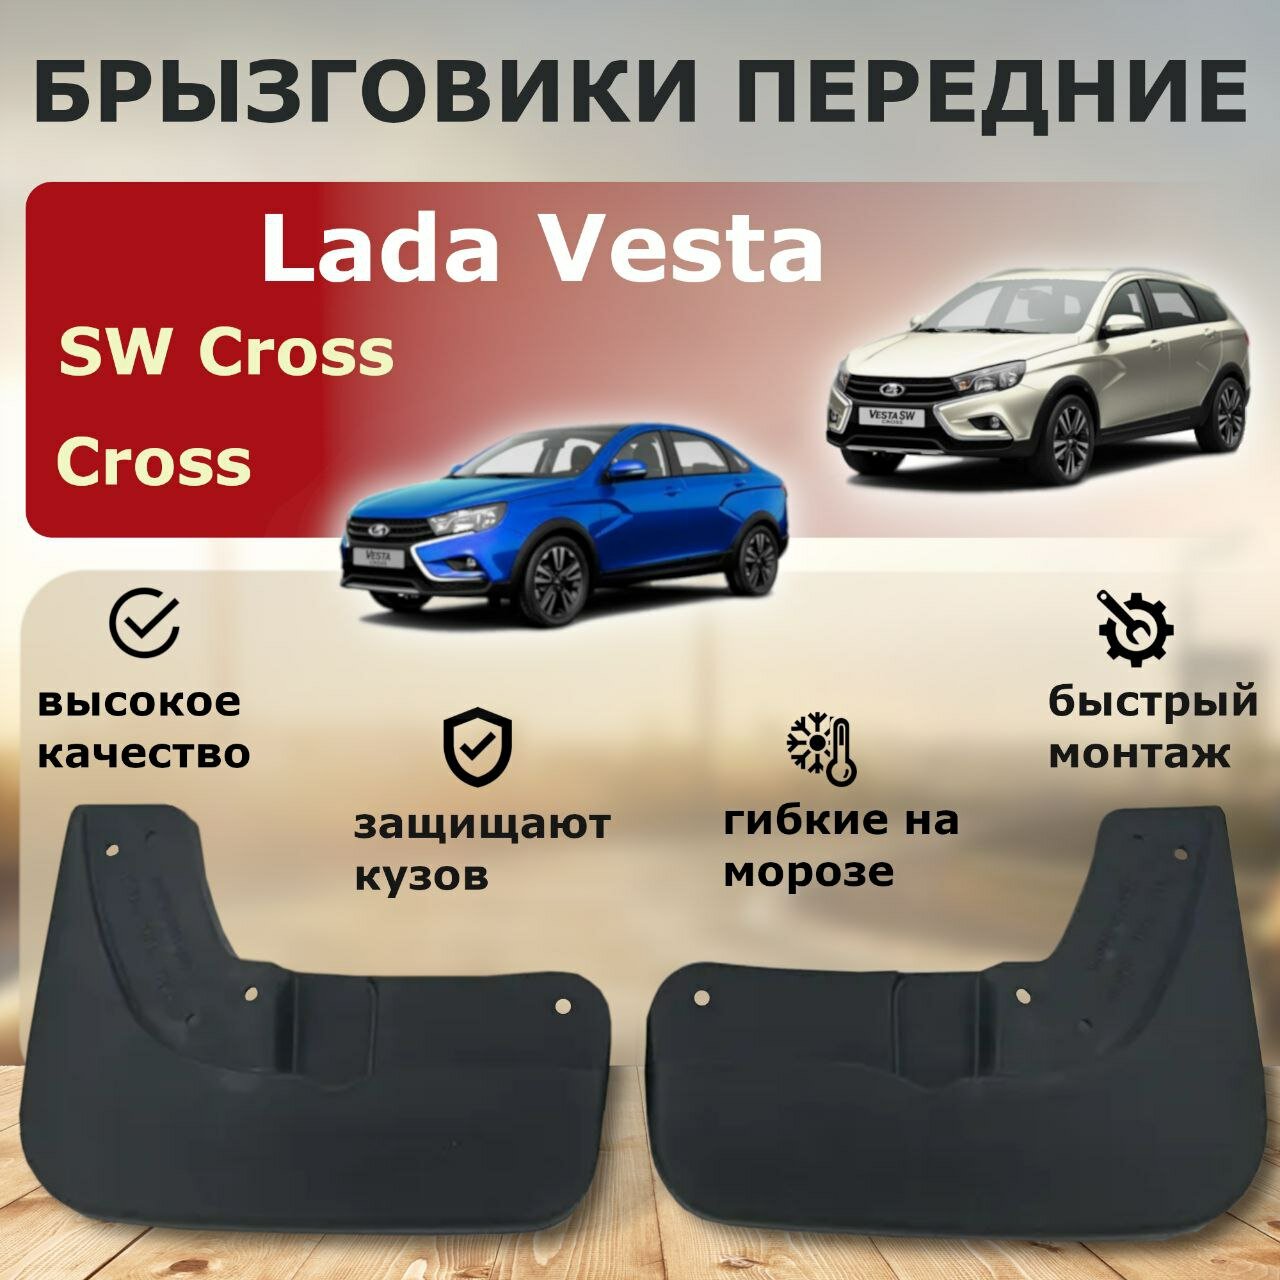 Брызговики передние Lada Vesta Cross / SW Cross